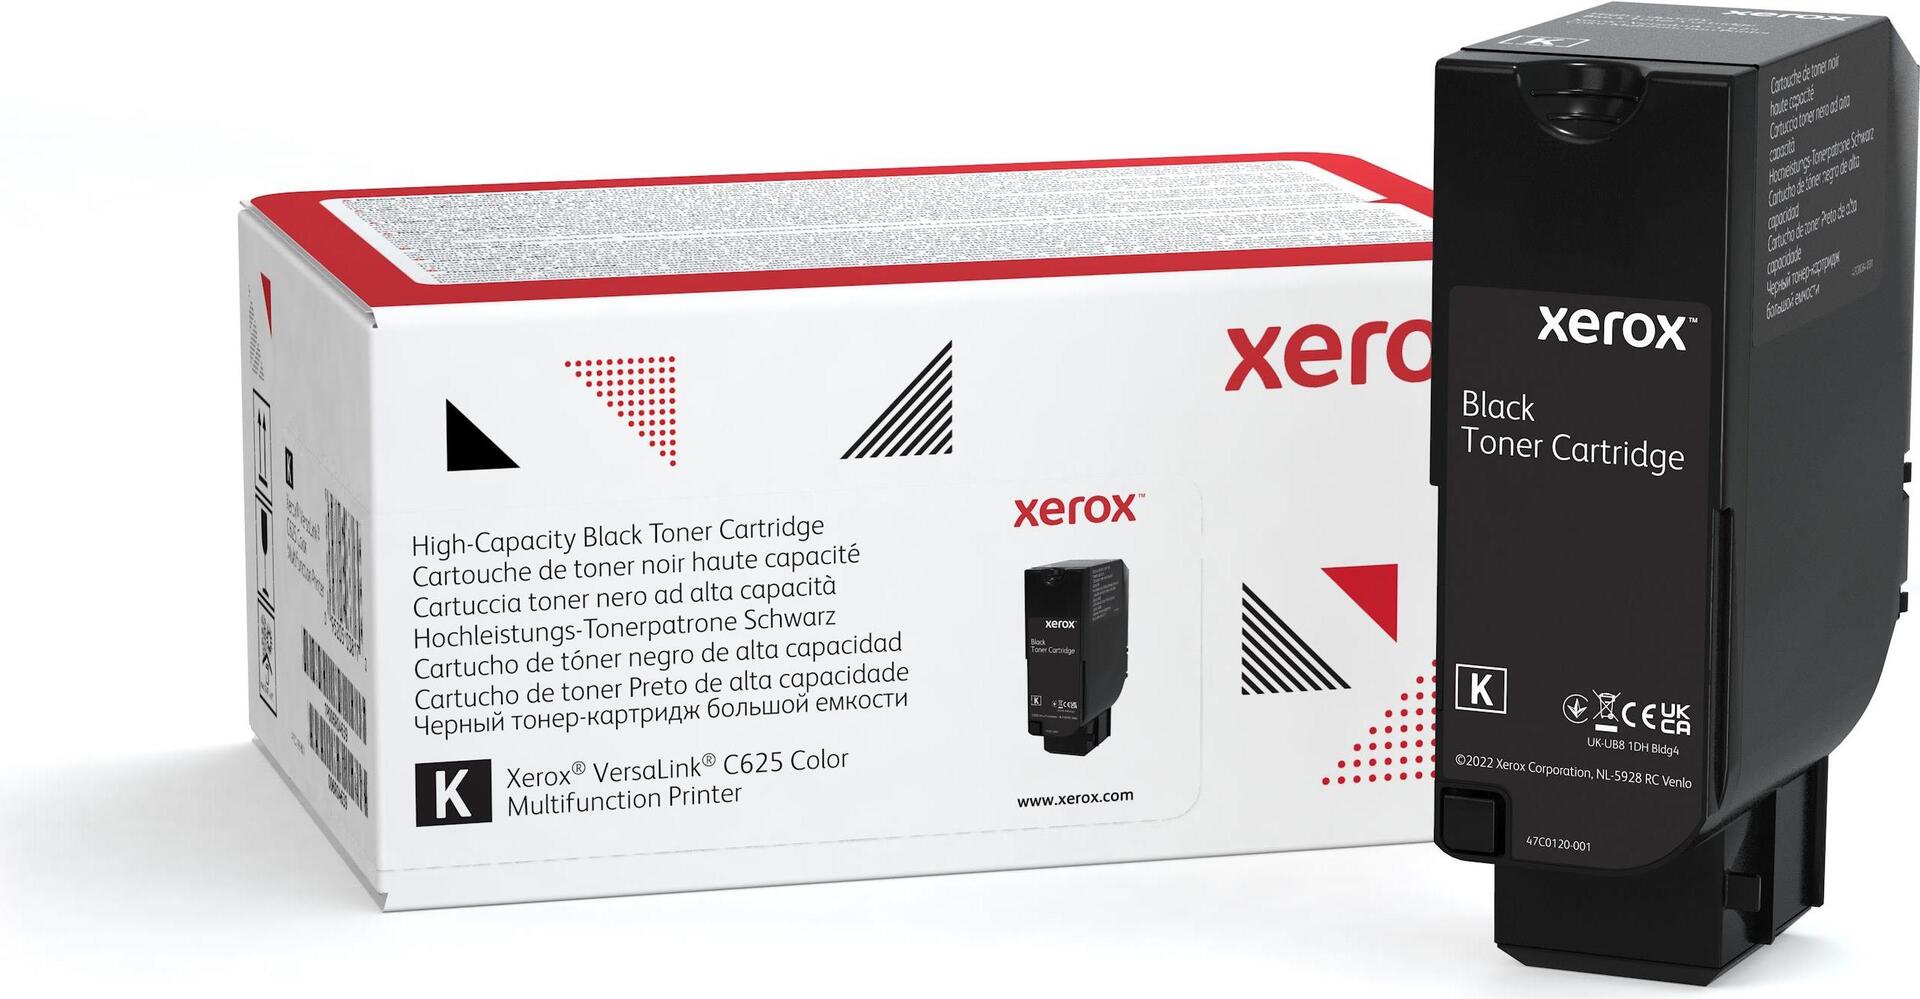 Xerox Mit hoher Kapazität (006R04636)